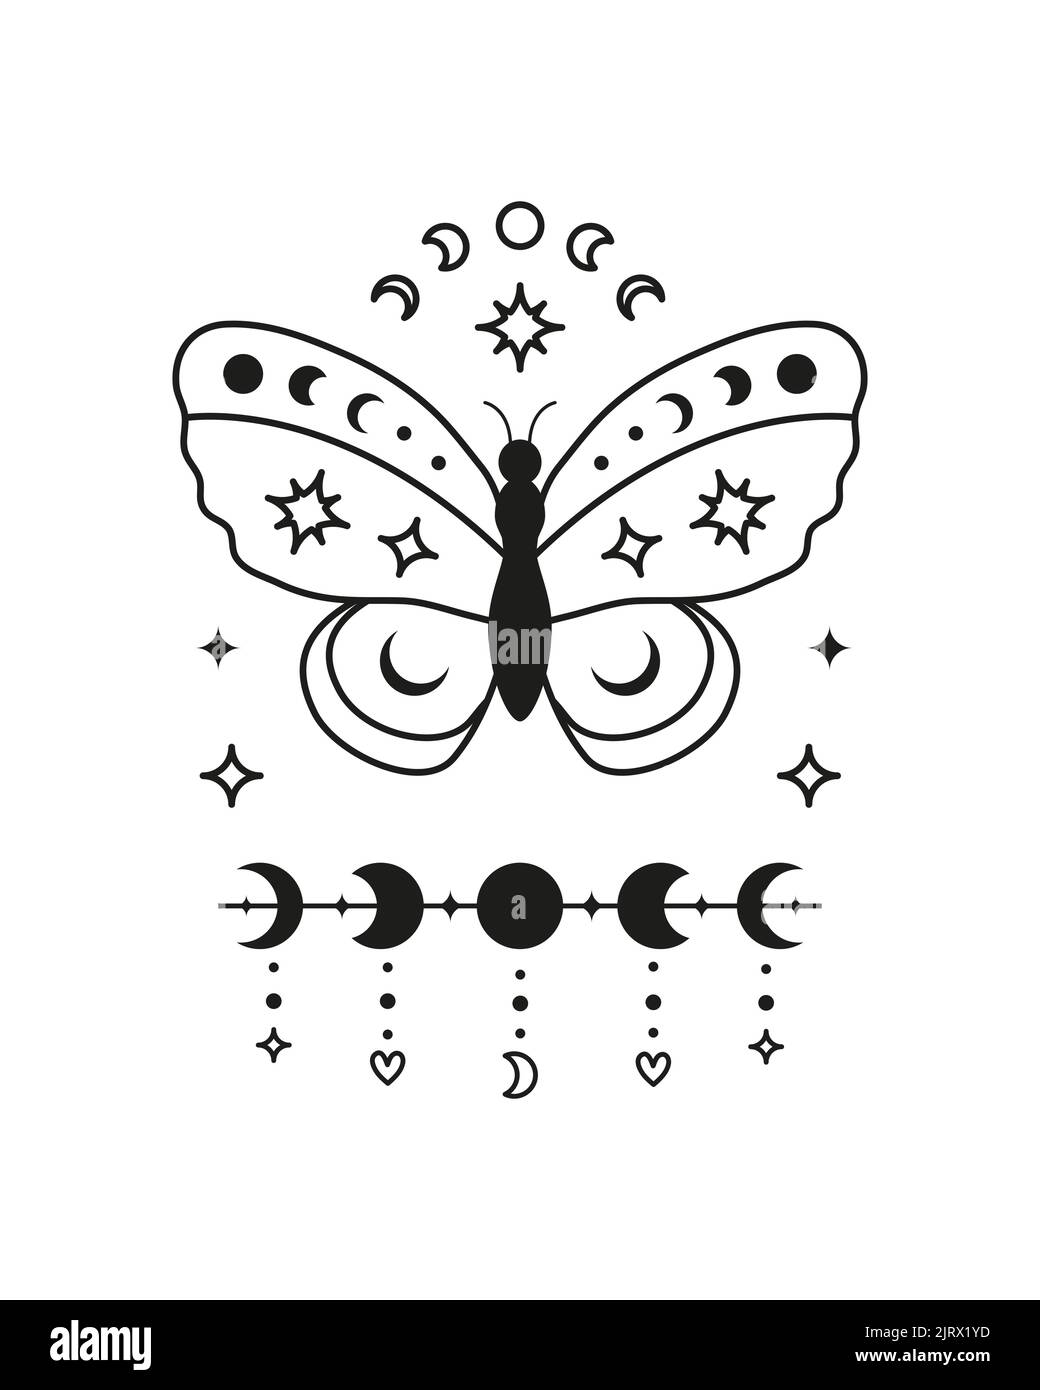 Magische okkulte Tarot-Karte mit Boho-Symbolen Schmetterling, Mondphasen, Halbmond und Sternen isoliert auf weißem Hintergrund. Astrologie spirituelles Poster. Esoteri Stock Vektor